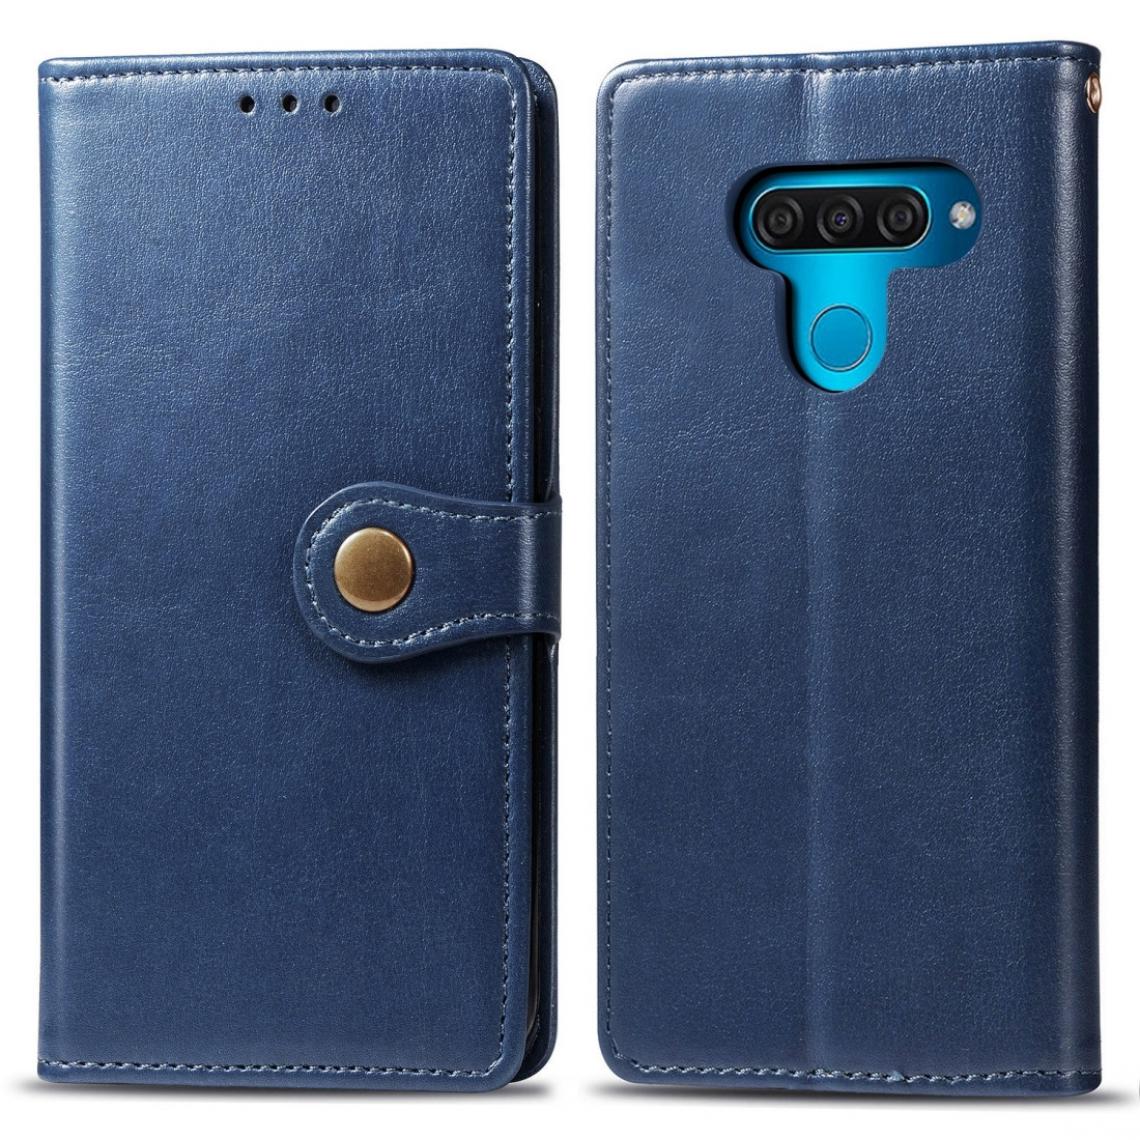 Wewoo - Housse Coque Etui en cuir de couleur unie pour téléphone portable avec protection et ceinturefonction photo et fente carteainsi que support et LG Q60 bleu - Coque, étui smartphone